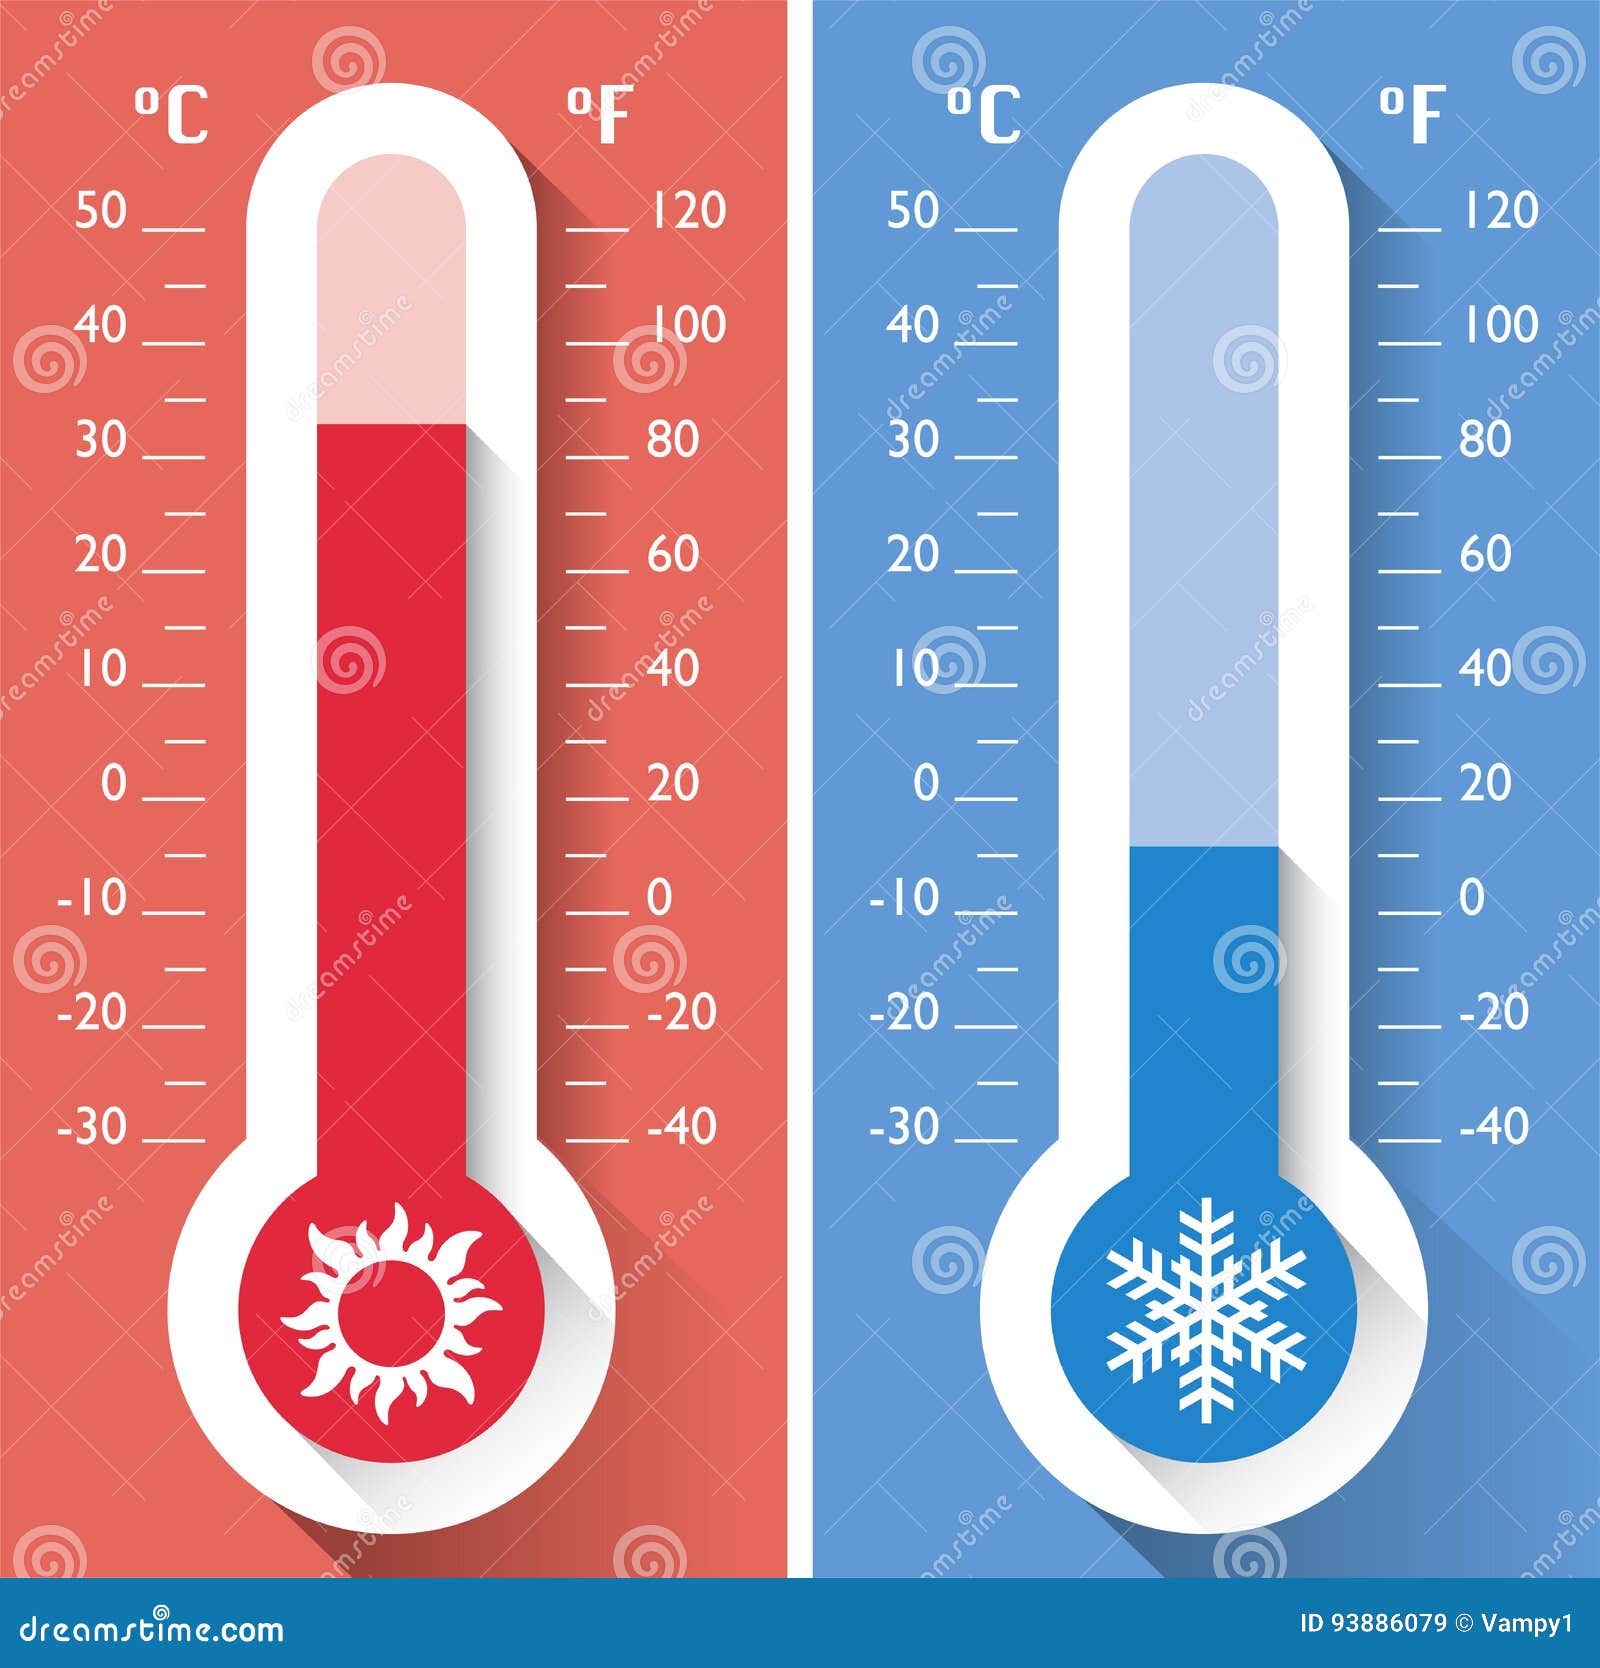 Le thermomètre instrument météo, découvrez tout ce qu'il faut